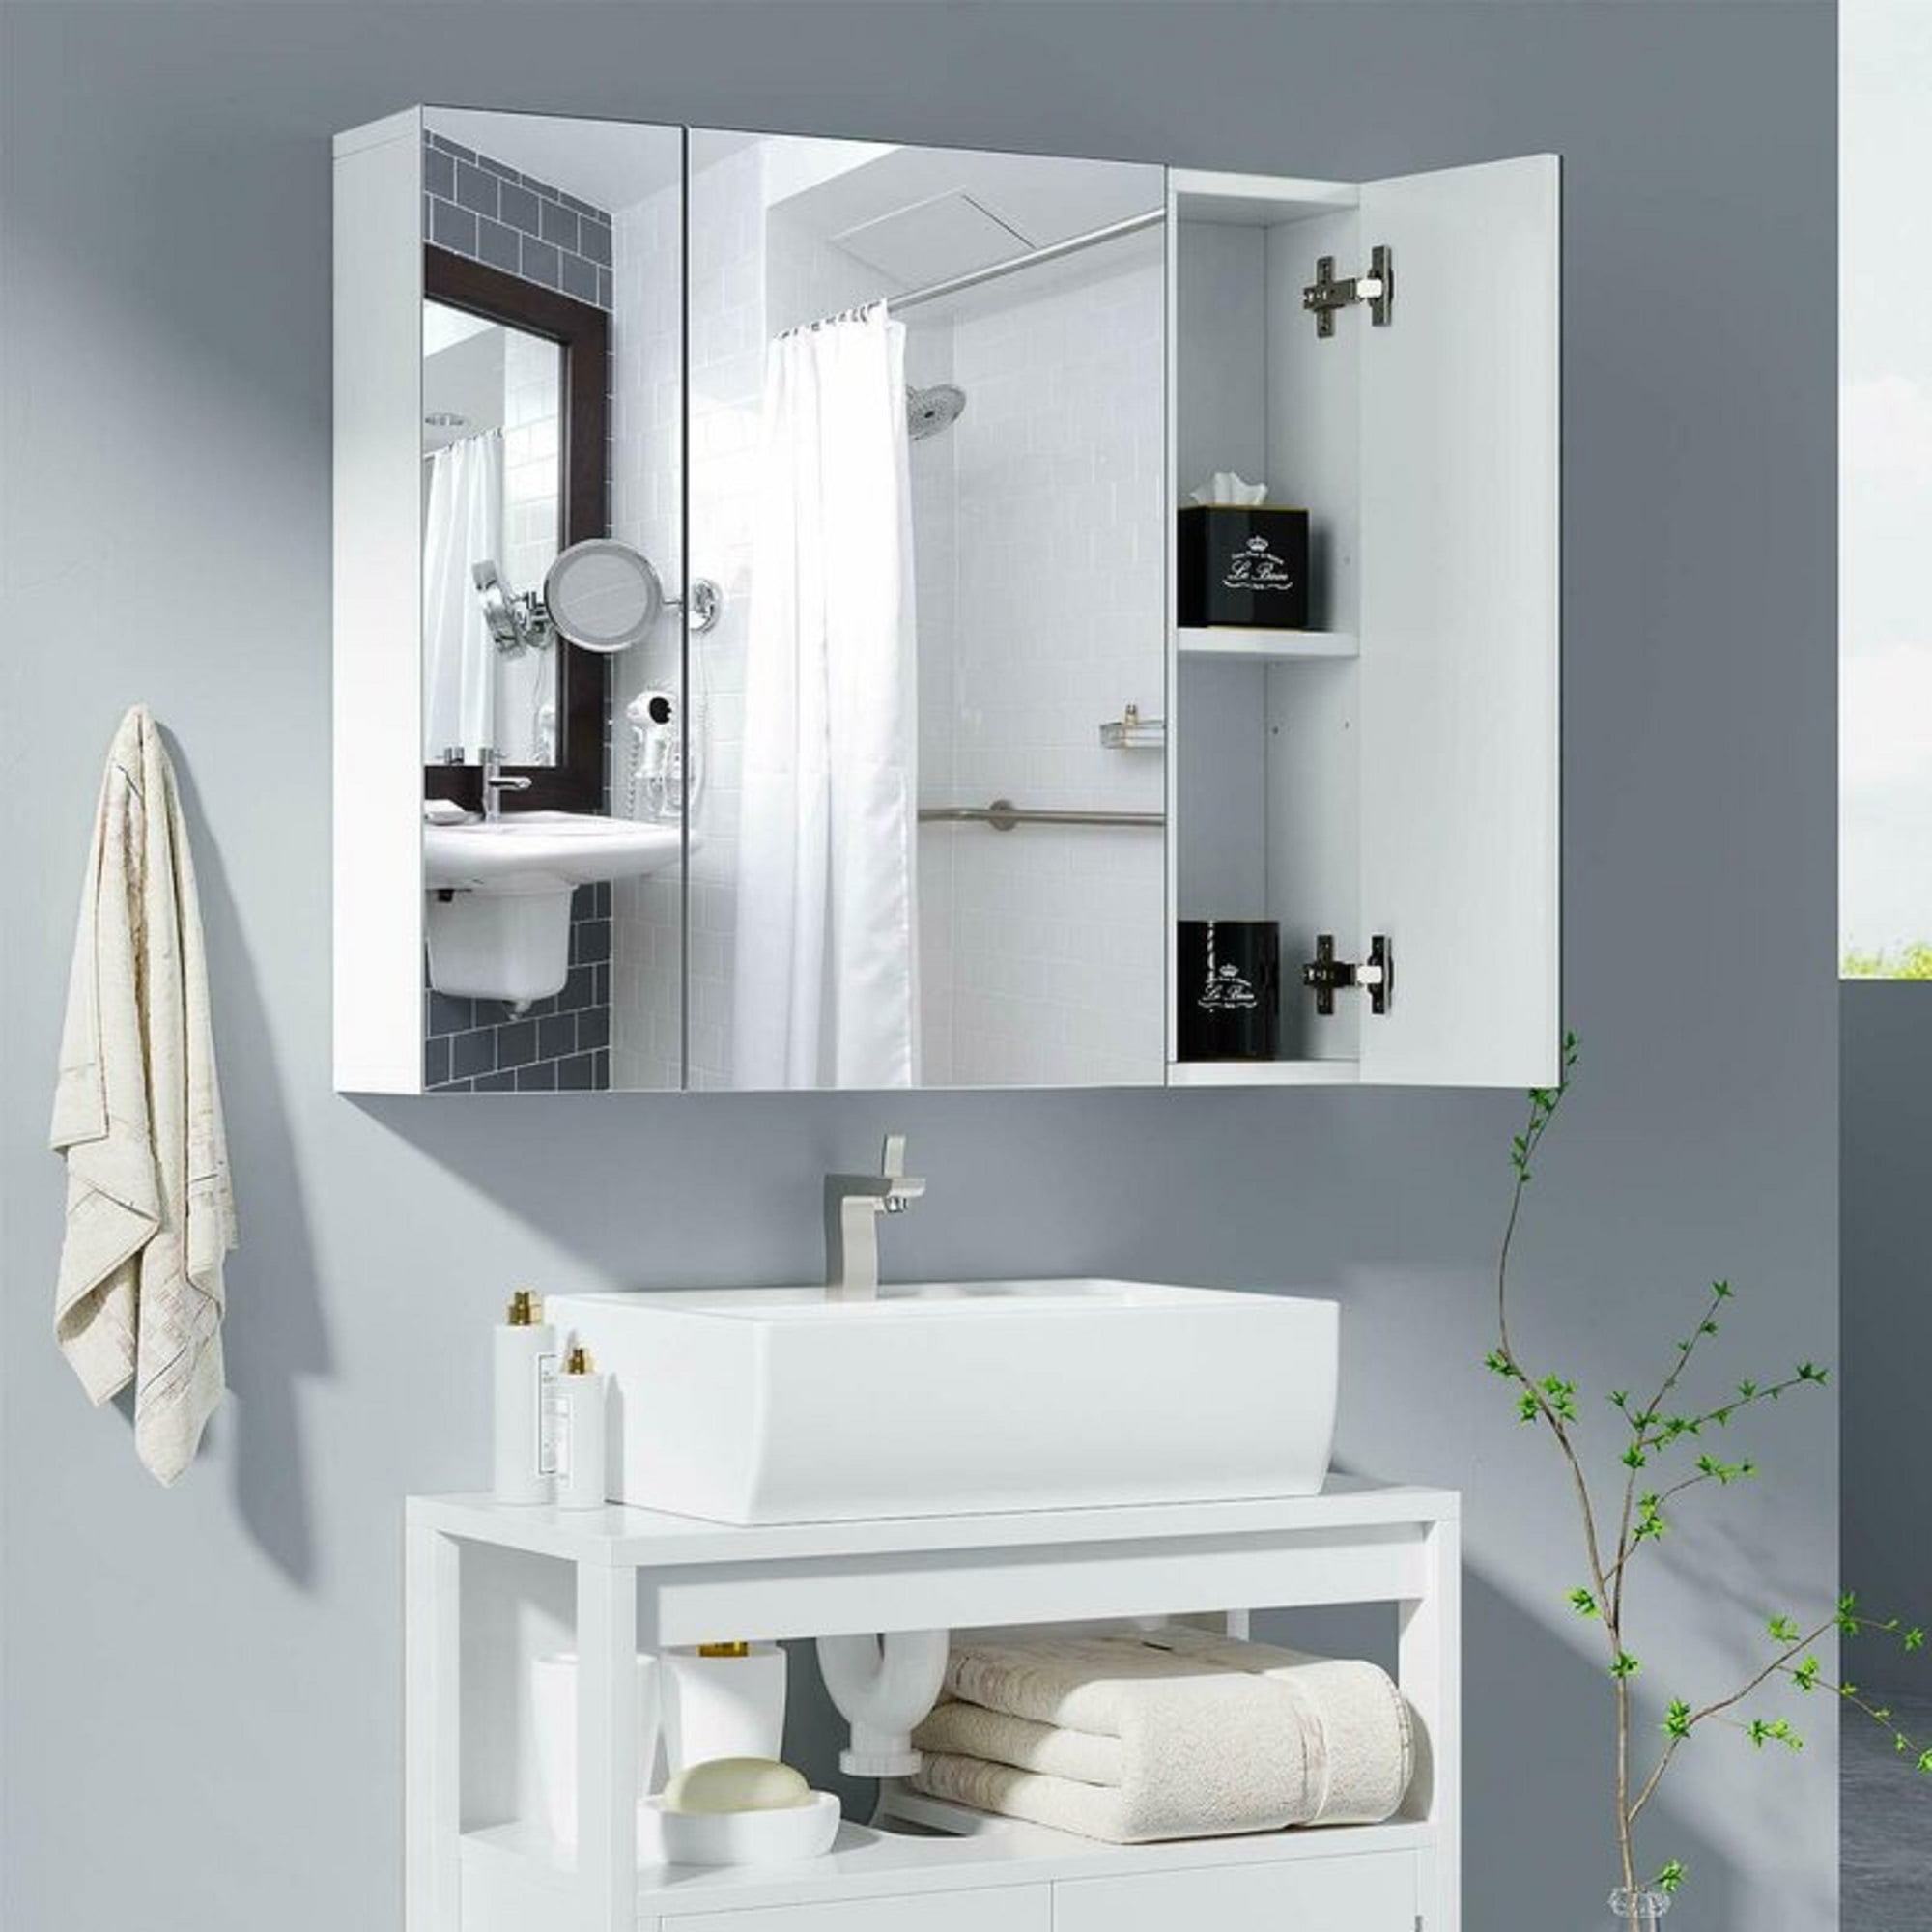 Homfa Bathroom Wall Mirror Cabinet 27, Wall Mirror Shelf Bathroom